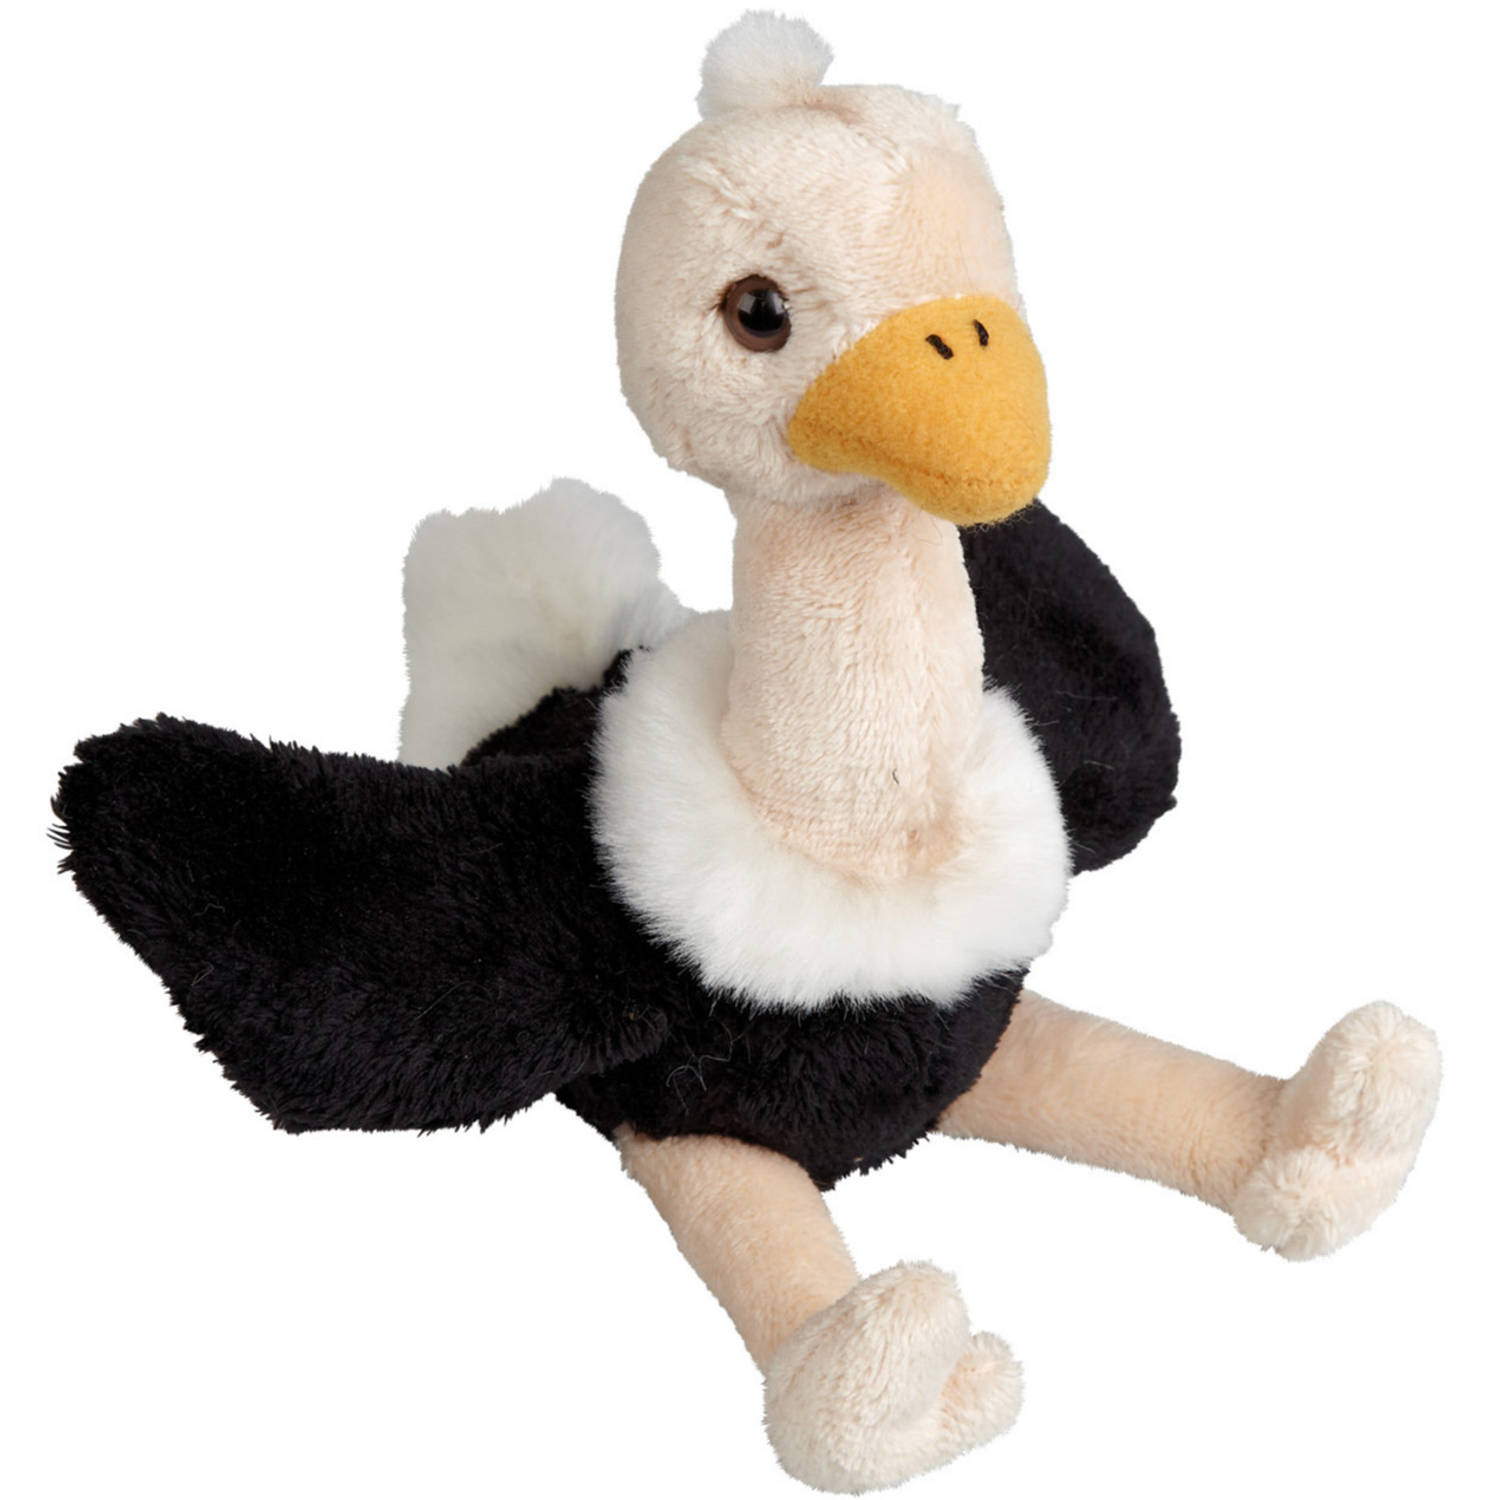 Pluche kleine knuffel dieren Struisvogel vogel van 15 cm - Speelgoed knuffels vogels - Leuk als dieren cadeau voor kinderen